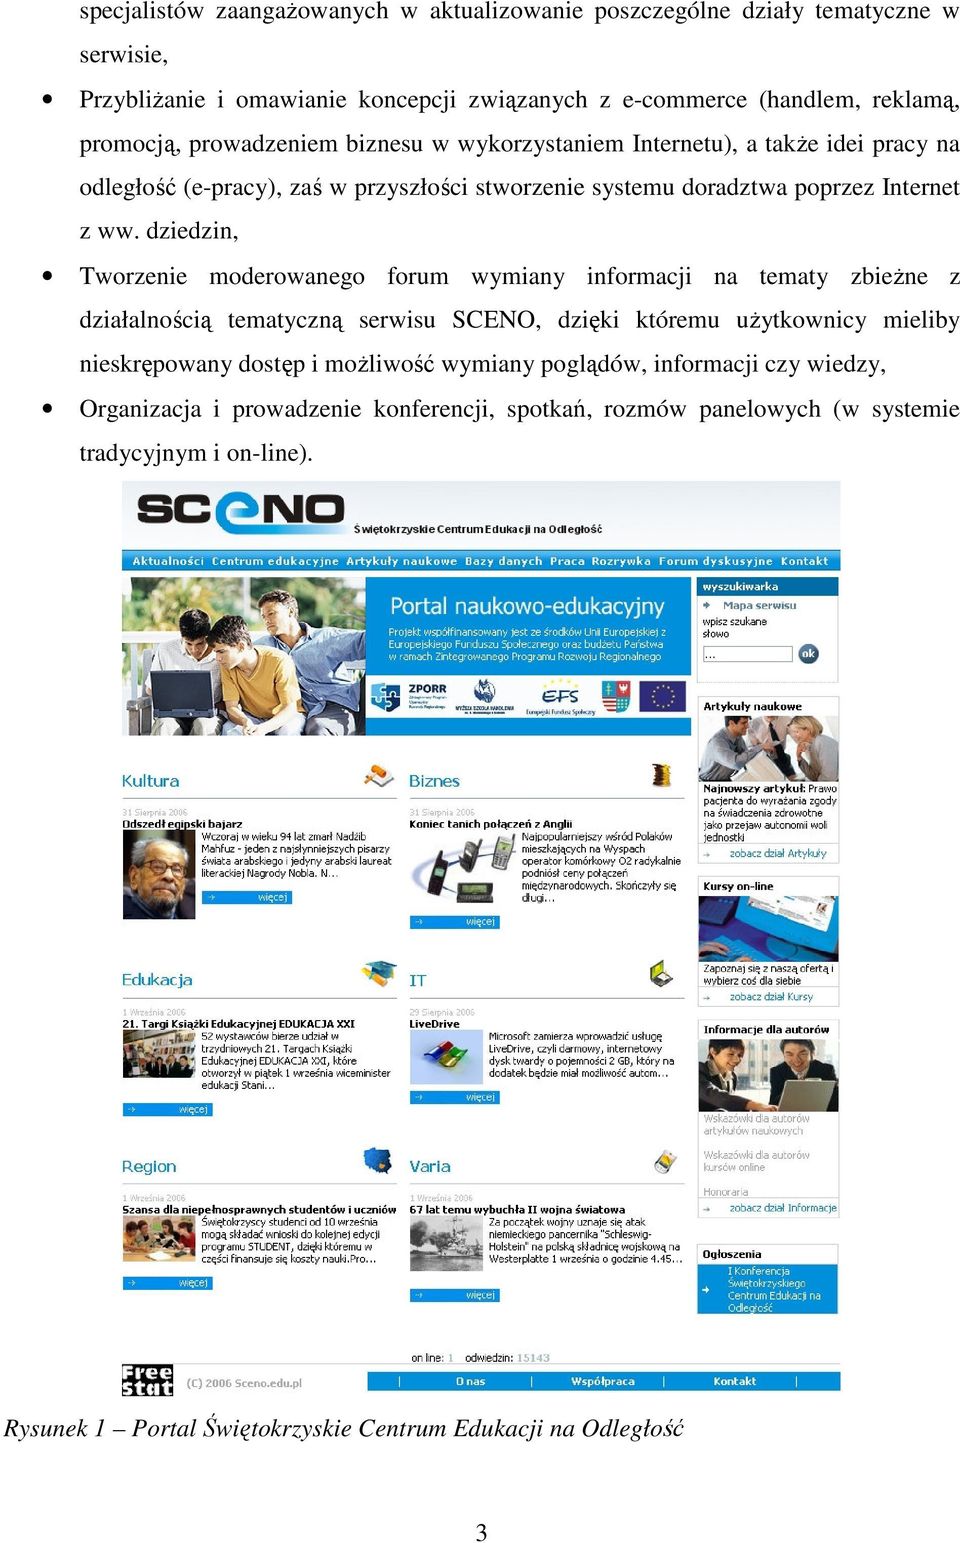 dziedzin, Tworzenie moderowanego forum wymiany informacji na tematy zbieżne z działalnością tematyczną serwisu SCENO, dzięki któremu użytkownicy mieliby nieskrępowany dostęp i